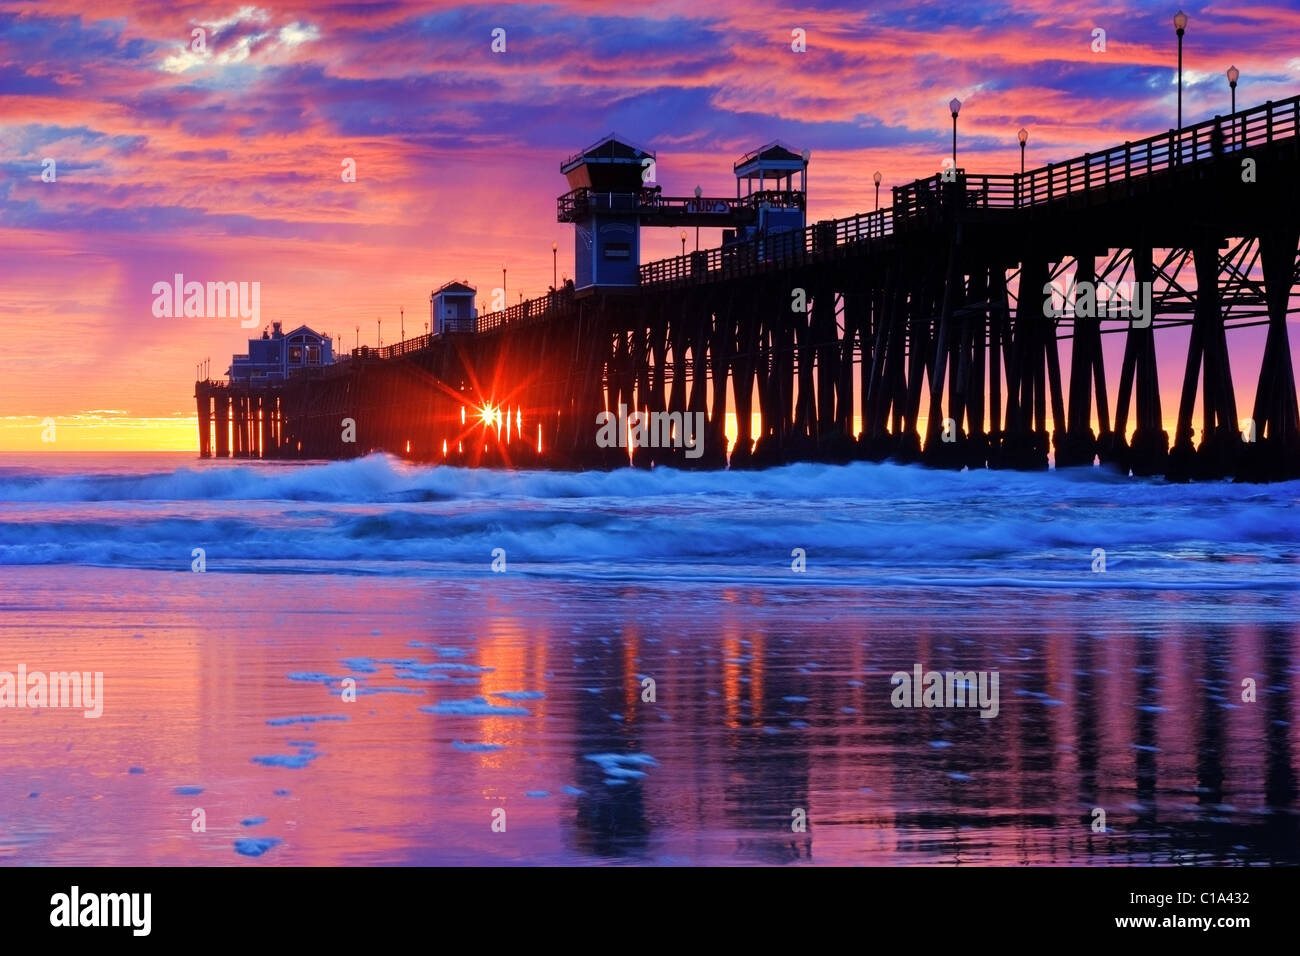 USA. Le ciel est très dynamique, cet incroyable coucher du soleil. Capturés à l'Oceanside Pier en Californie du Sud. Banque D'Images